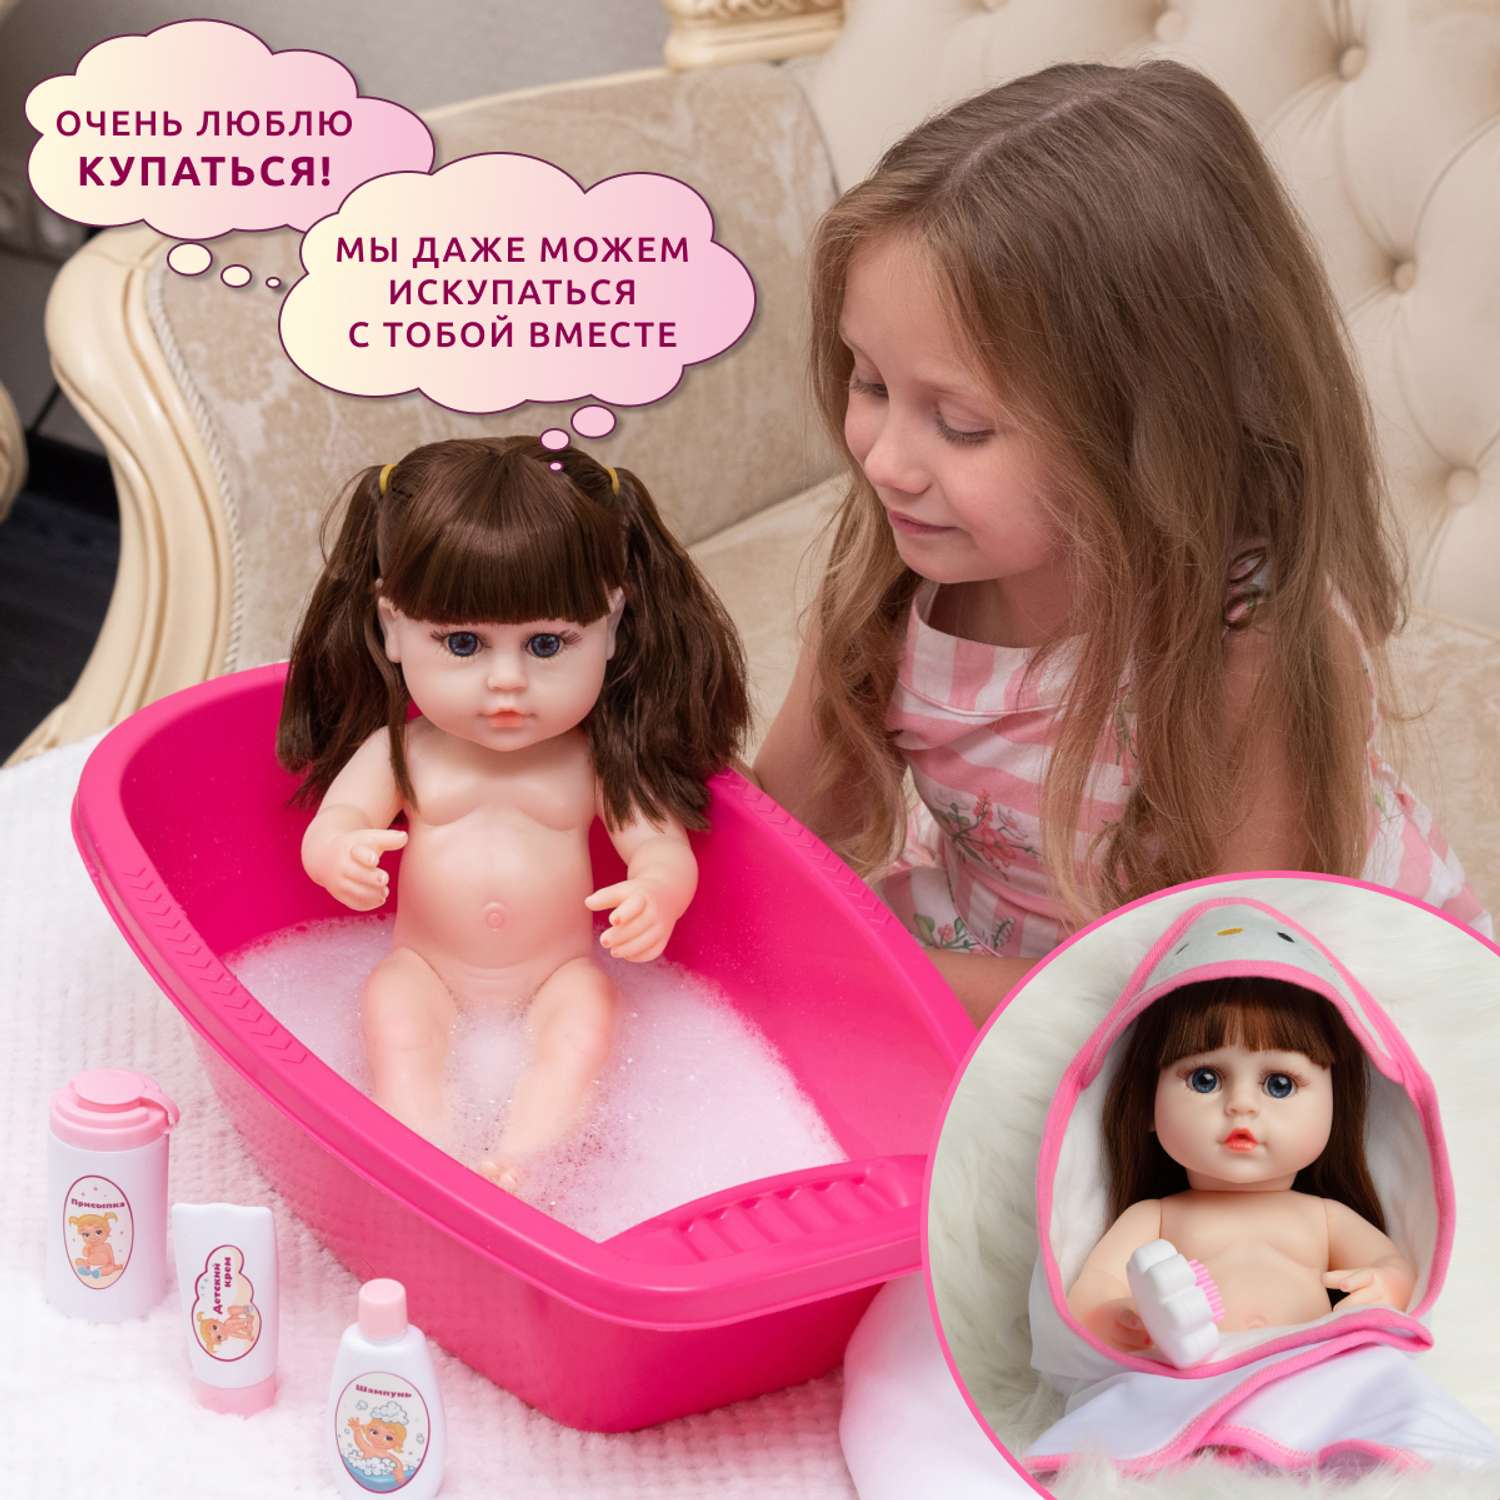 Кукла Реборн QA BABY Мисти девочка интерактивная Пупс набор игрушки для ванной для девочки 38 см 3808 - фото 4